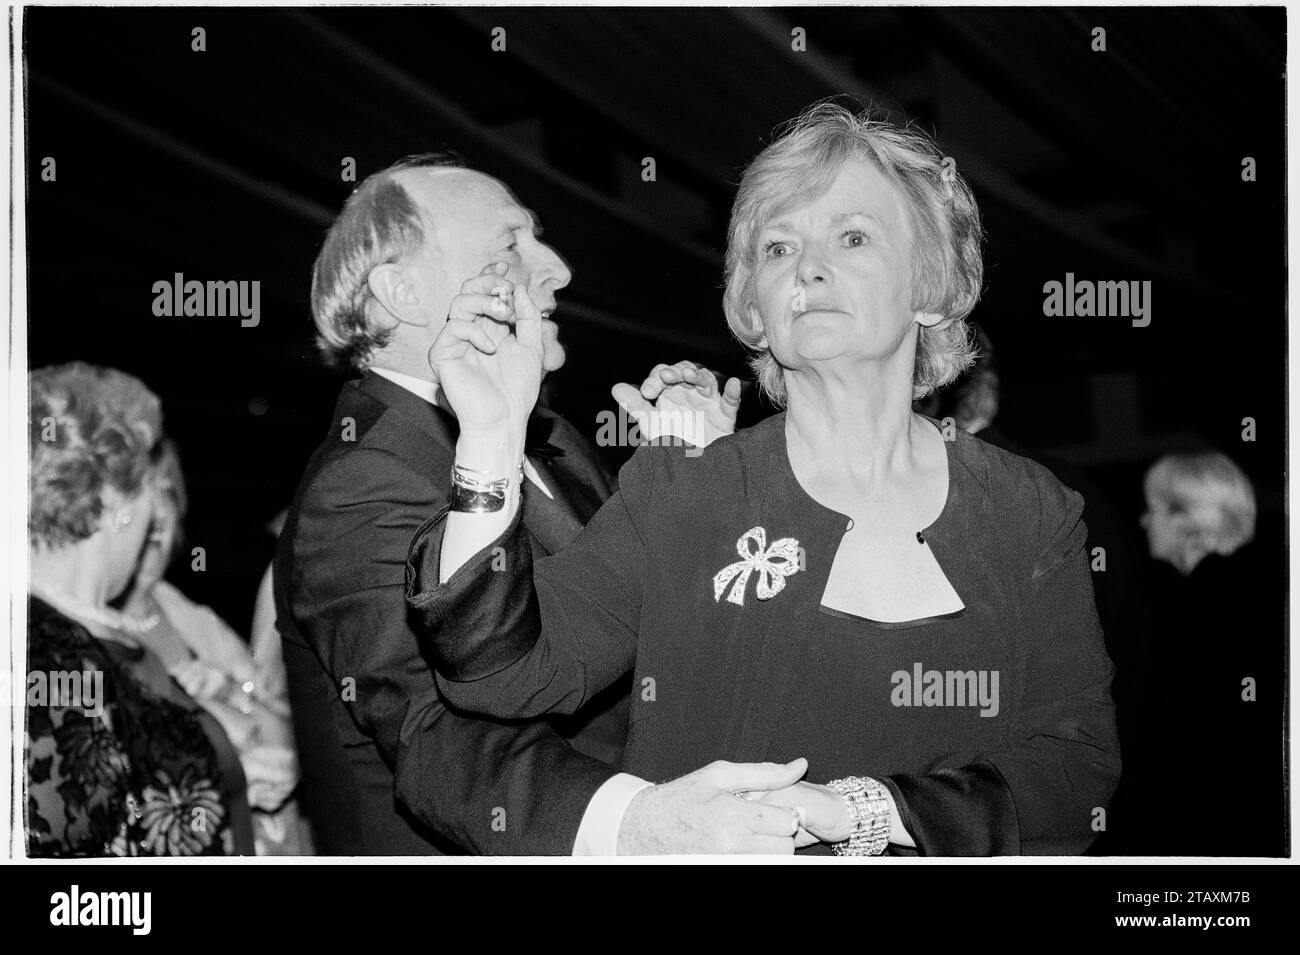 GLENYS KINNOCK, NEIL KINNOCK, CARDIFF, 2001: I politici sposati del Partito laburista gallese Glenys Kinnock e Neil Kinnock ballano insieme alla cerimonia di premiazione della donna gallese dell'anno 2001 e al Gala Dinner Ball il 23 novembre 2001 alla Cardiff International Arena (CIA), Galles, Cardiff. All'epoca Glenys Kinnock era membro del Parlamento europeo e Neil Kinnock era Commissario europeo. Foto: Rob Watkins Foto Stock